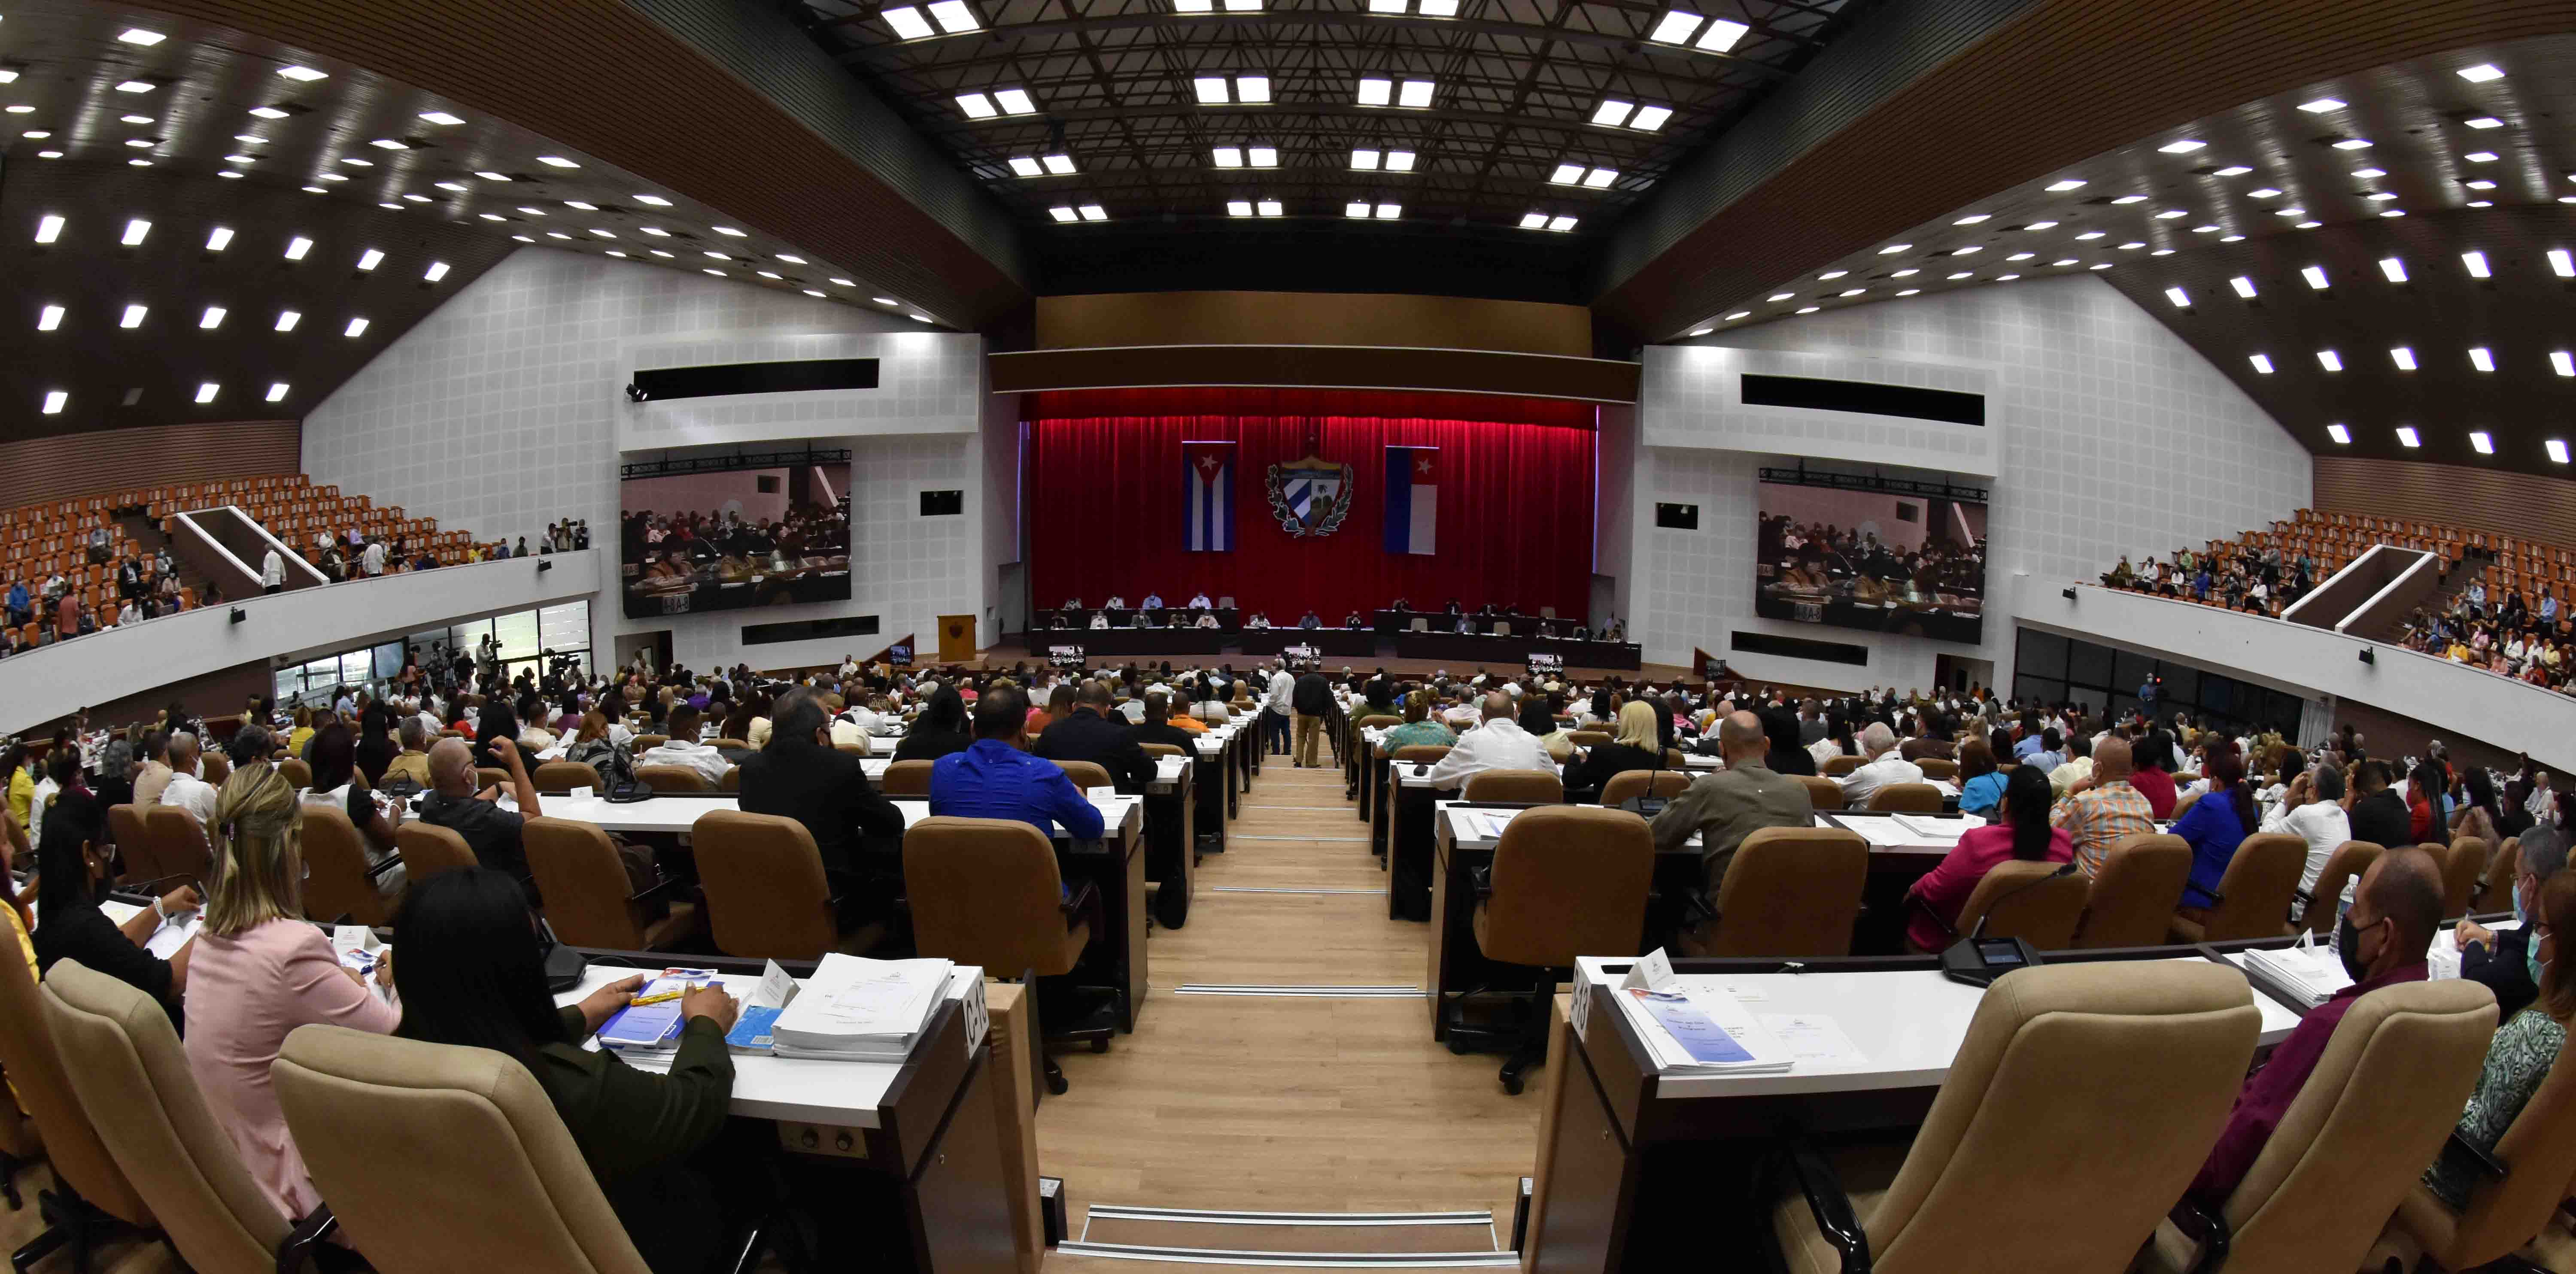 Inició hoy Quinta Sesión Extraordinaria de la Asamblea Nacional del Poder Popular en su IX Legislatura